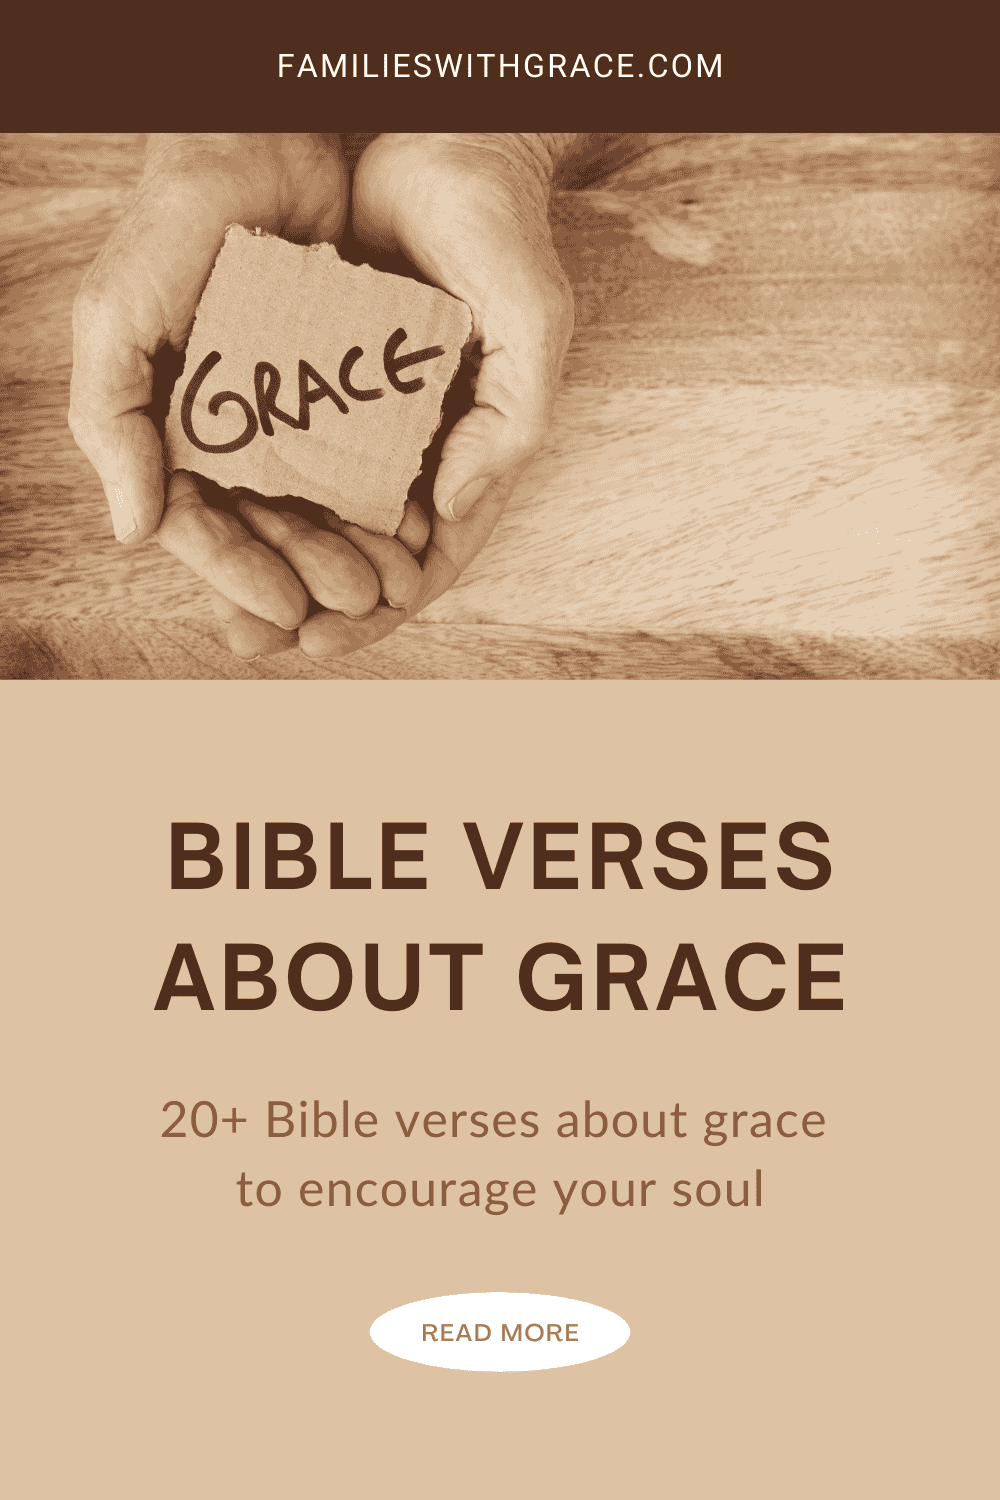 Bible verses about grace